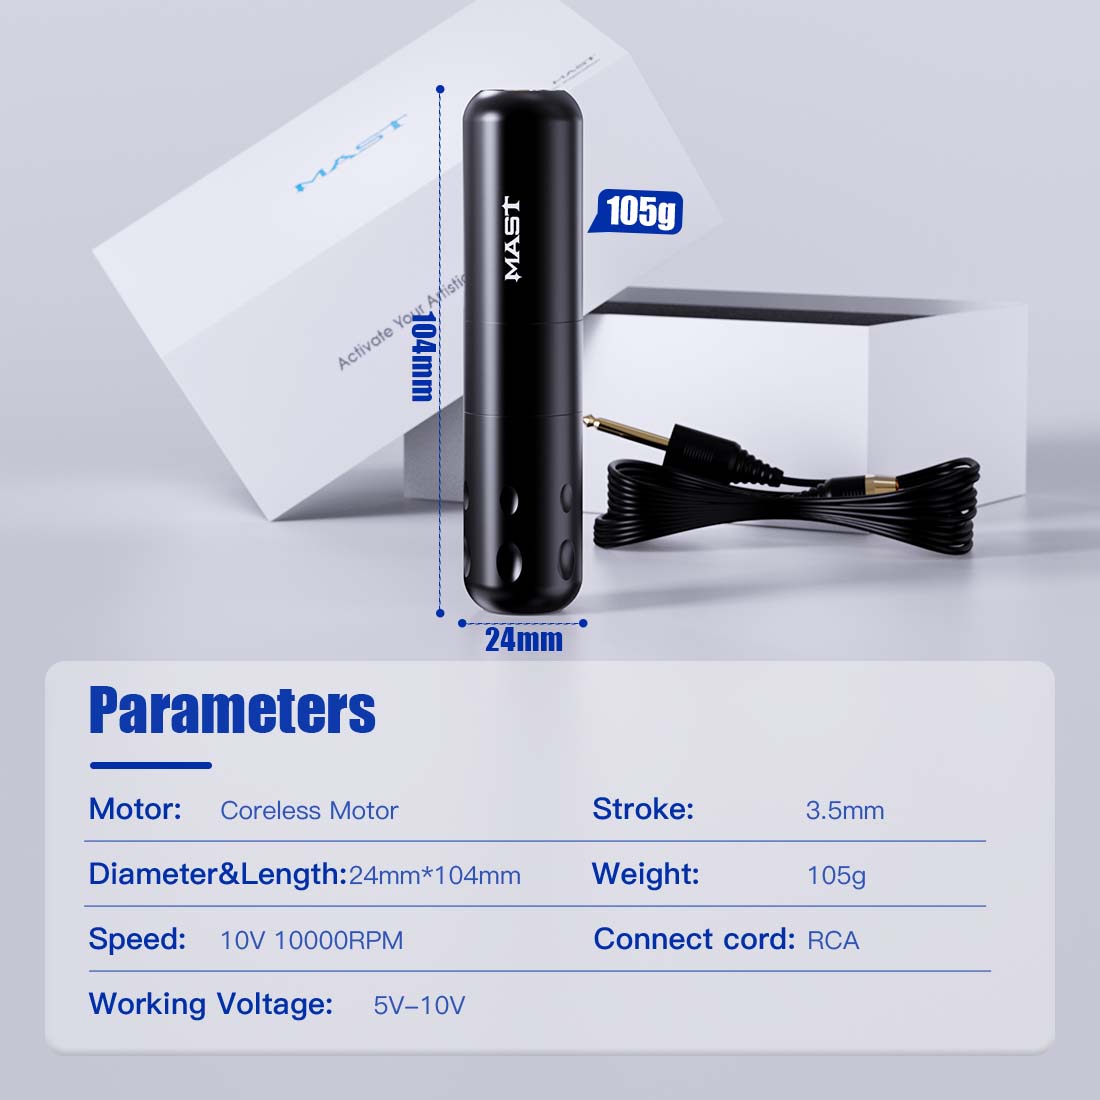 Mast S9 Coreless Powerful Motor Tattoo Pen Kit